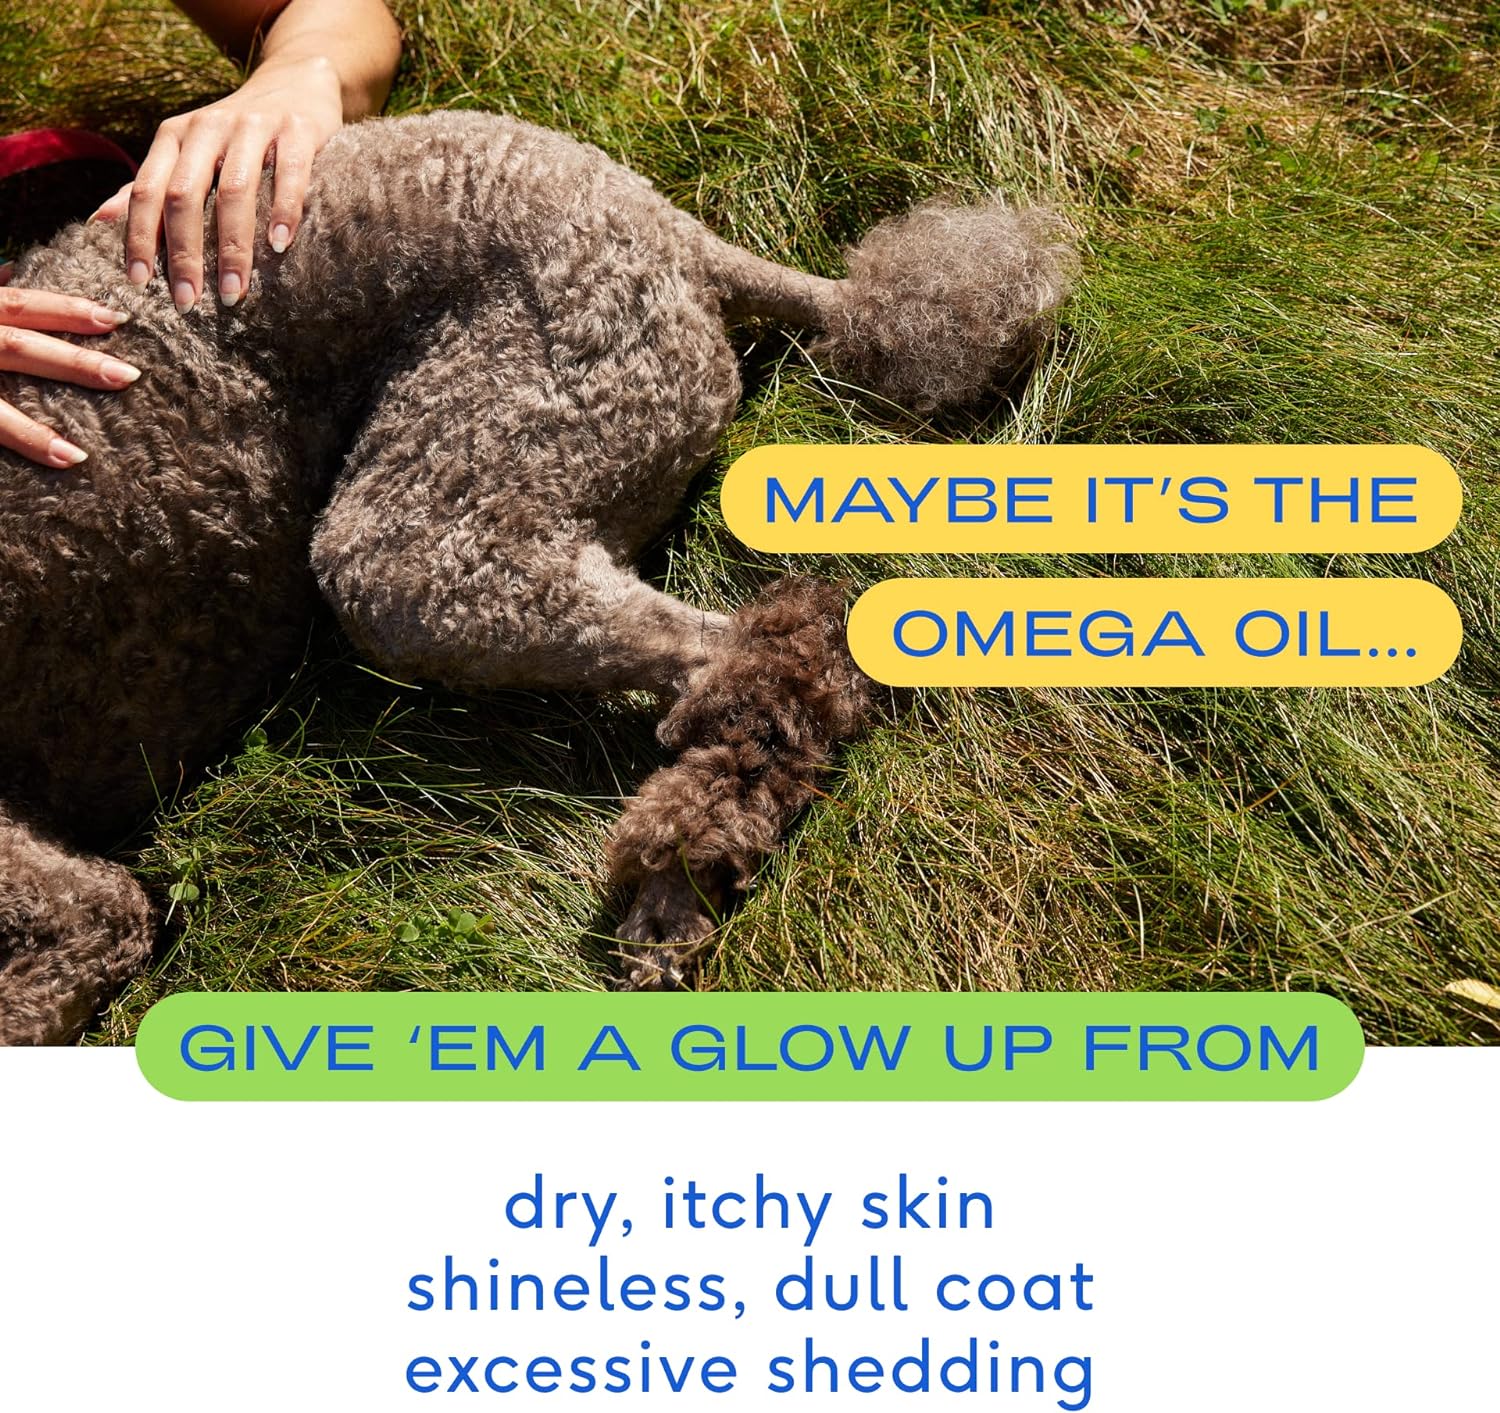 Aceite Omega para perros Suplementos de aceite de pescado para perros con Omega